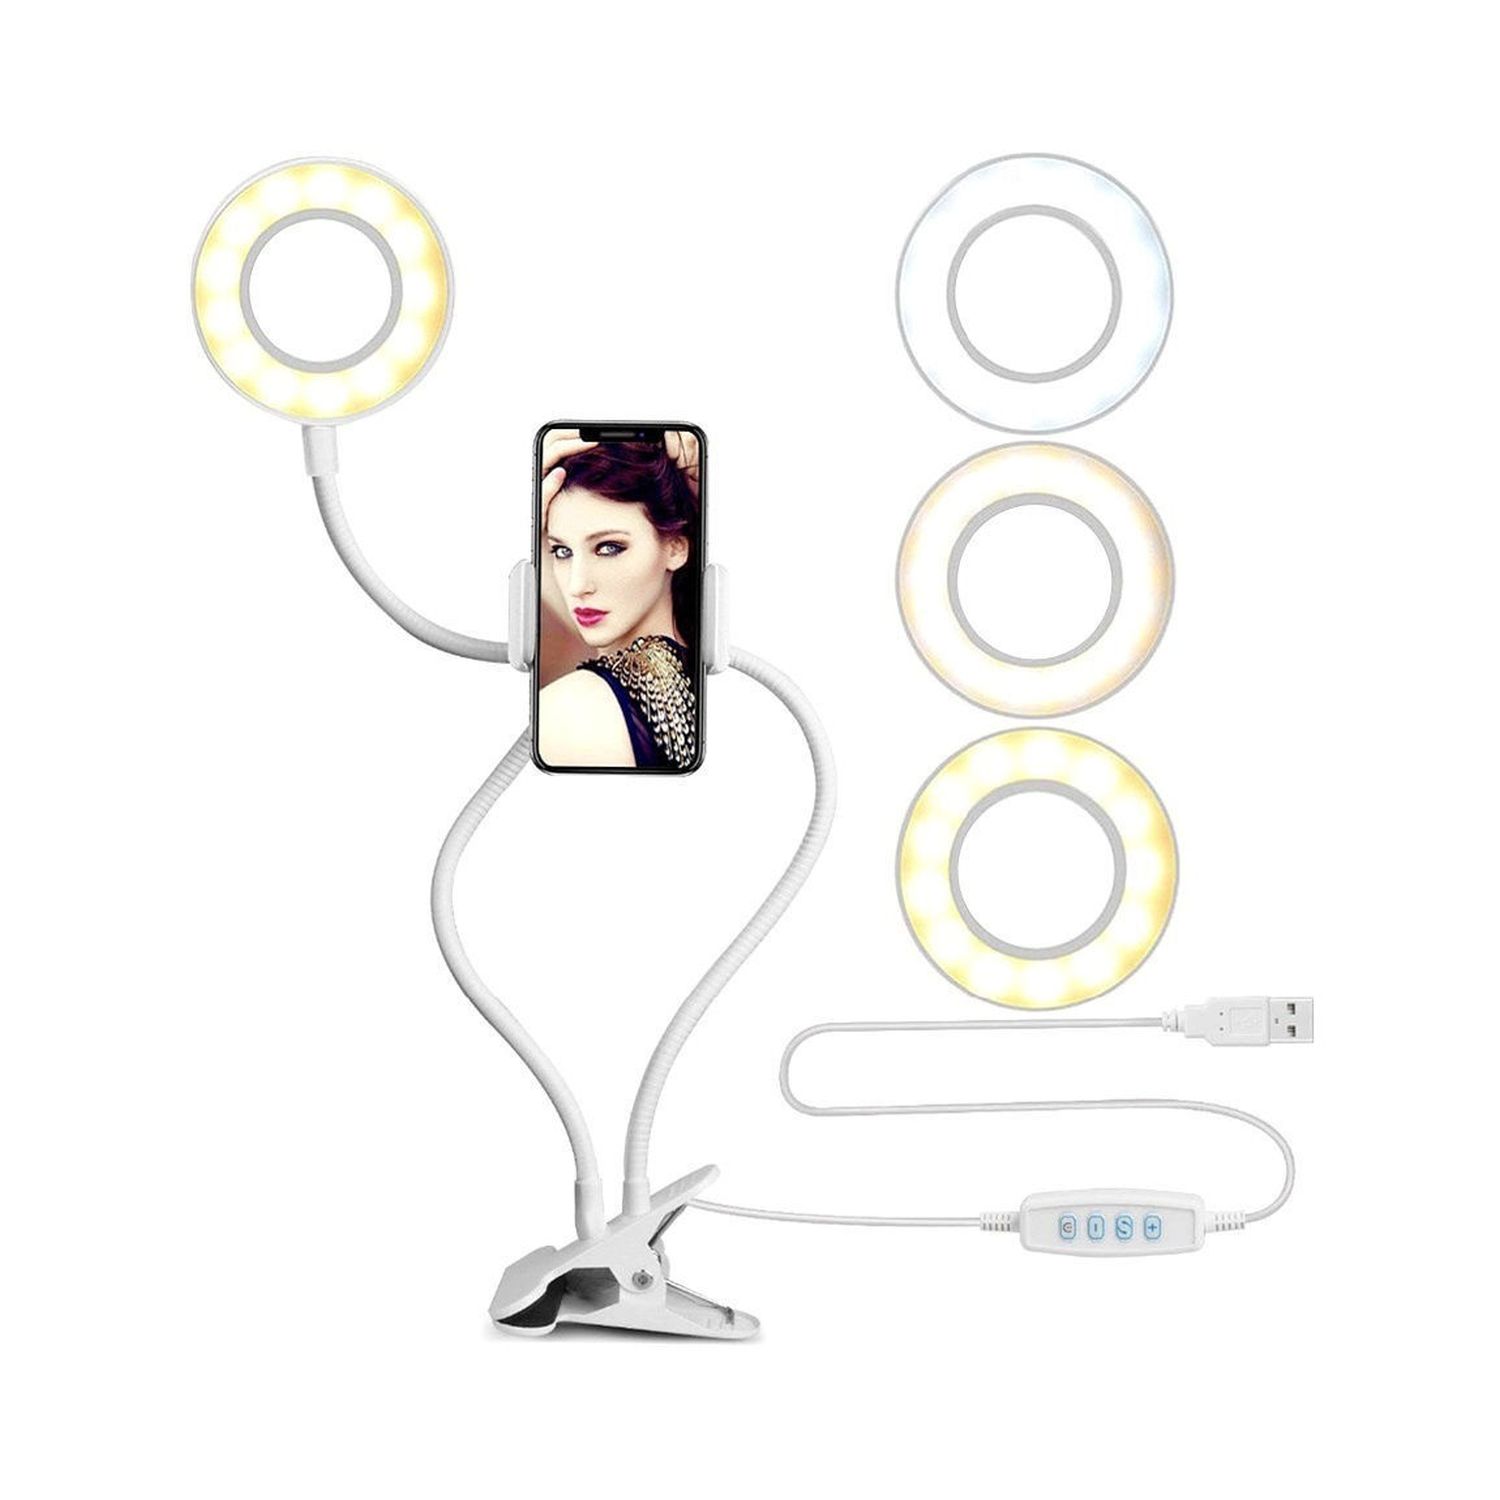 Селфи-лампа NPOSS кольцевая с гибким держателем для телефона белая - фото 2